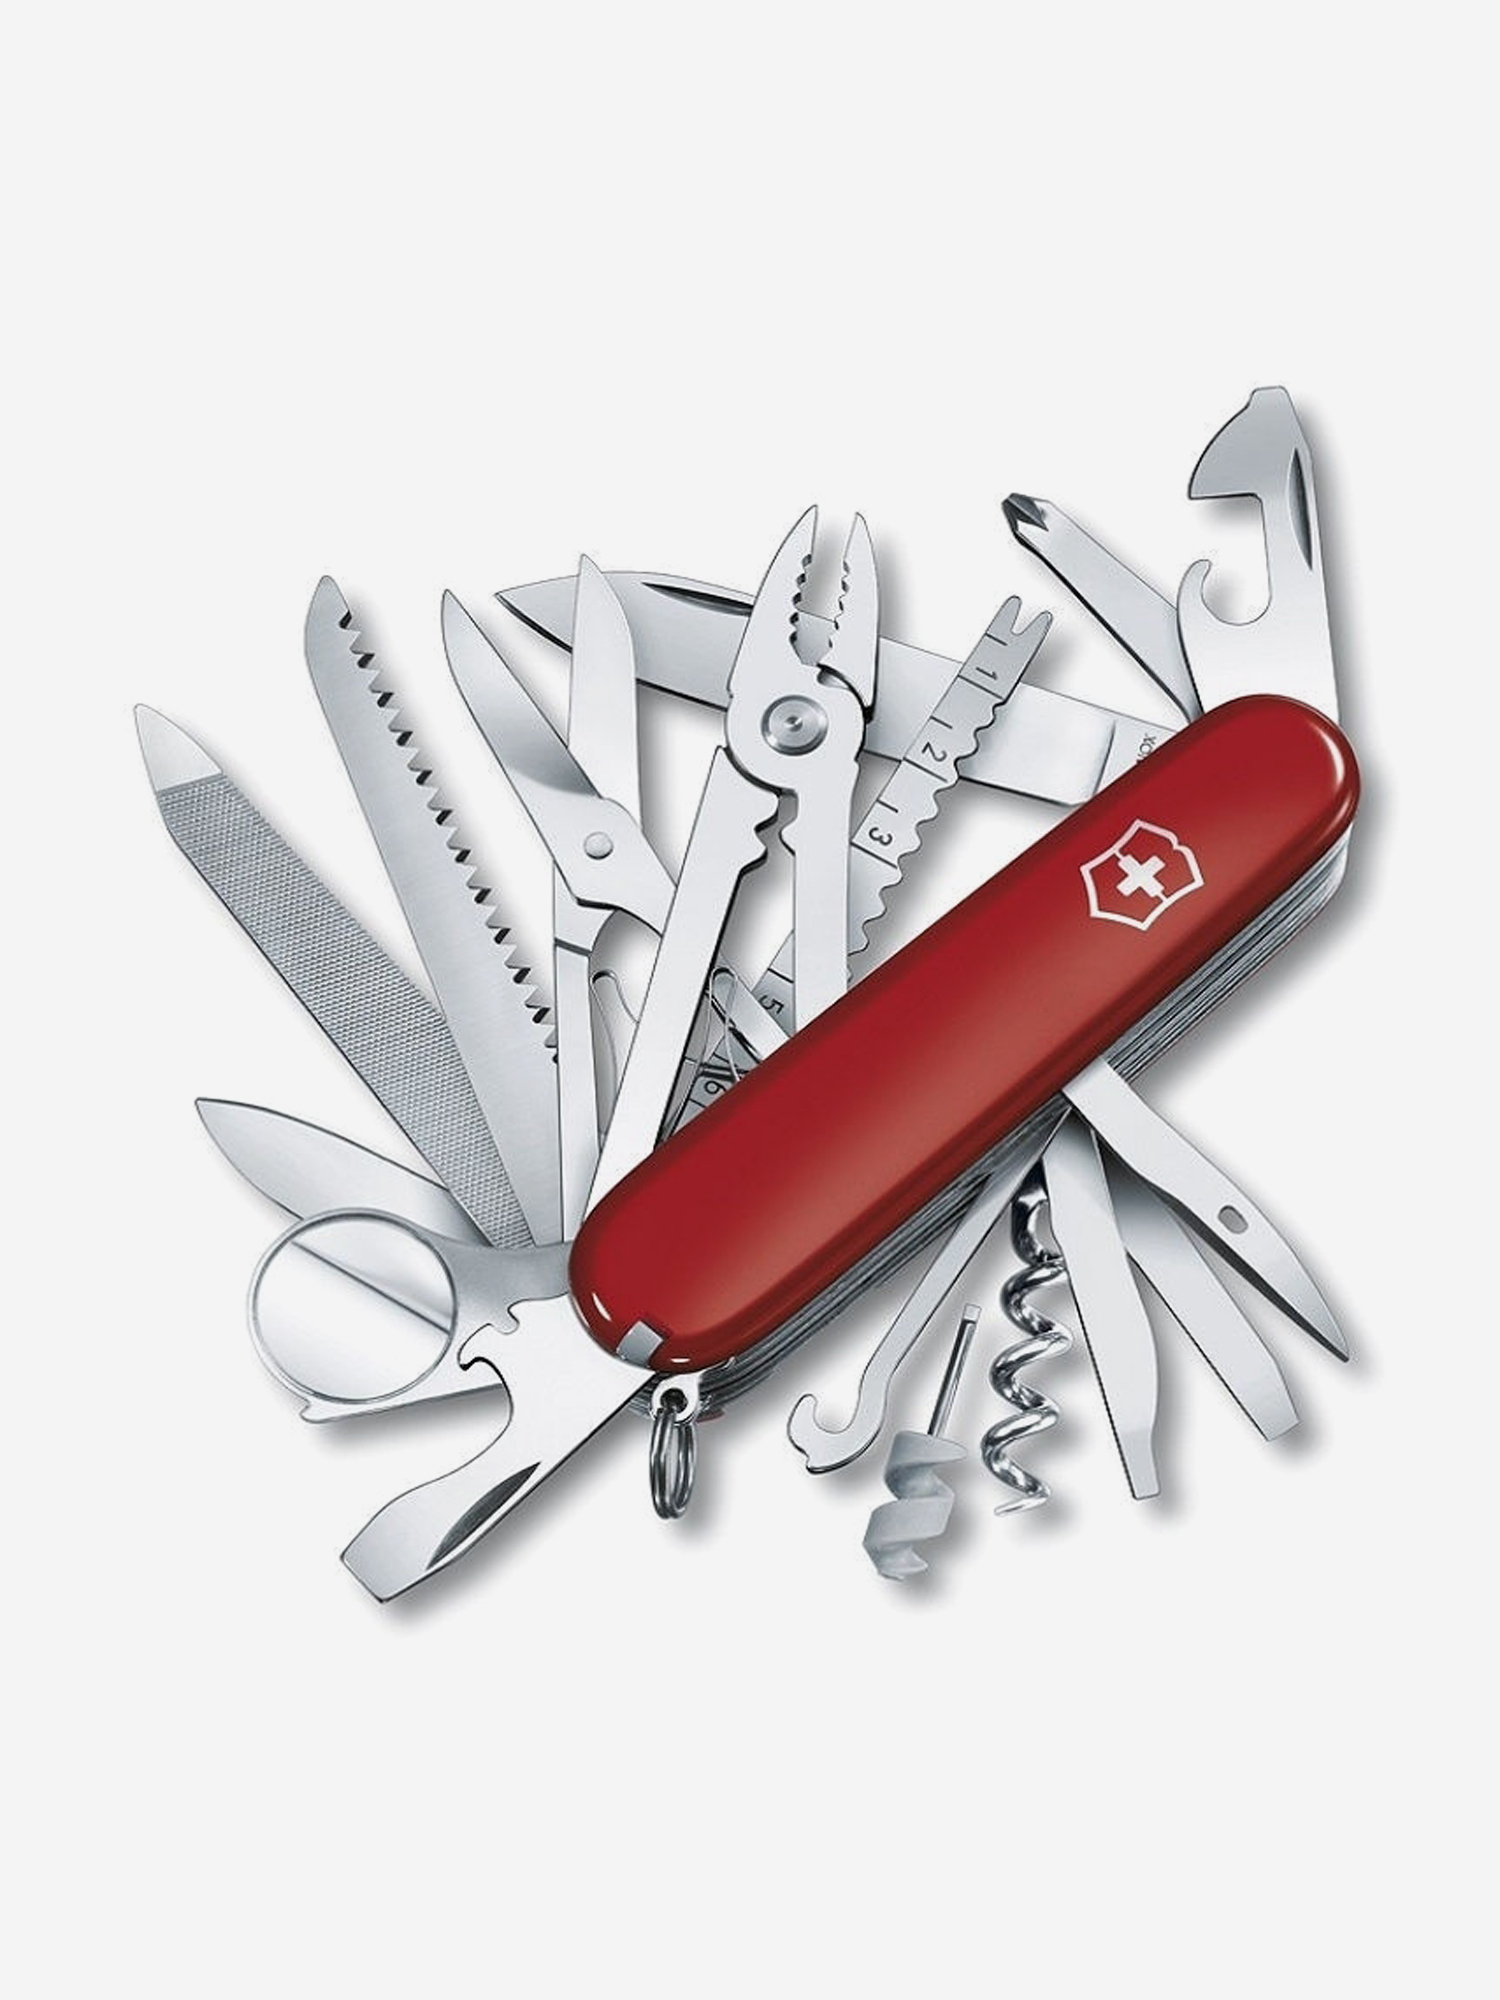 Нож складной Victorinox SwissChamp, 91 мм, 33 функции, Красный нож складной victorinox explorer 91 мм 16 функций красный